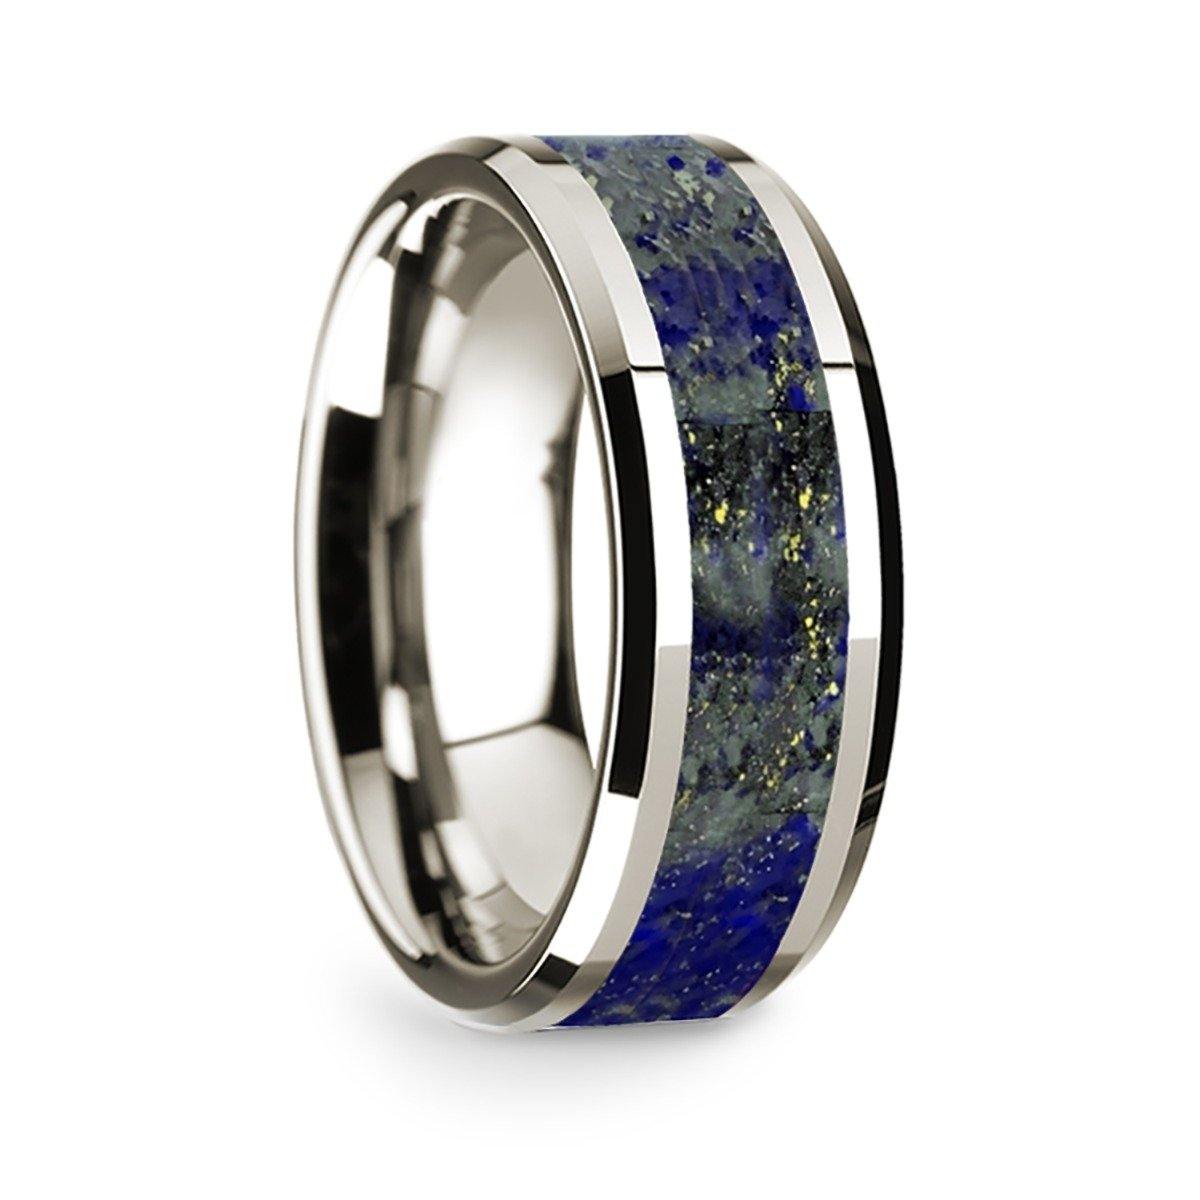 CALMA - 14k White Gold Polished Beveled Edges Wedding Ring with Lapis Lazuli Inlay - 8 mm - The Rutile Ltd